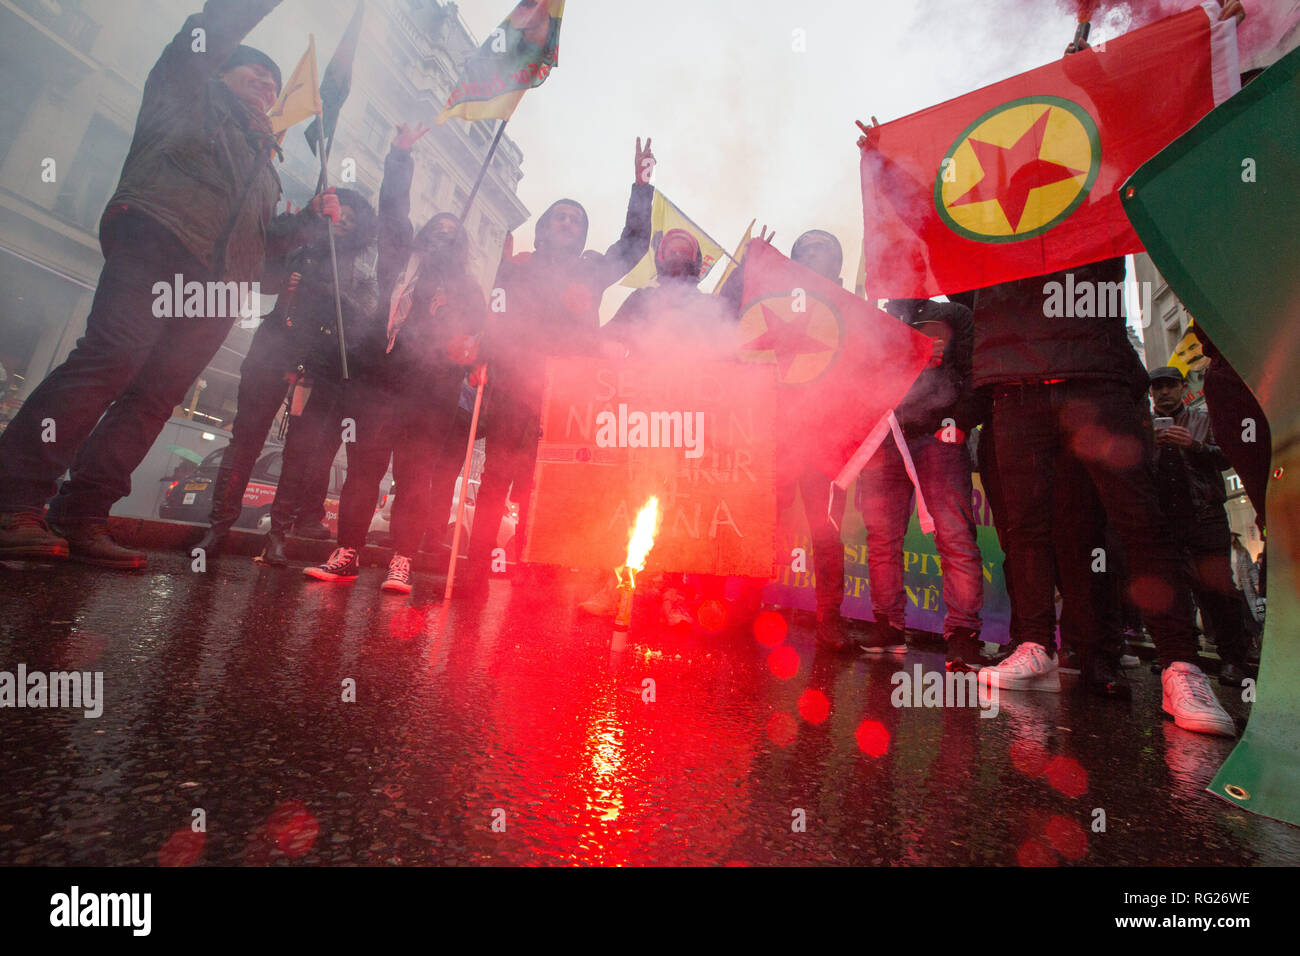 Londres, Reino Unido. 27 de enero de 2019 .pro el Kurdistán manifestantes marzo de Portland Place, a Trafalgar Square para manifestarse en contra de Turquía del supuesto apoyo del Estado Islámico. Crédito: George Cracknell Wright/Alamy Live News Foto de stock